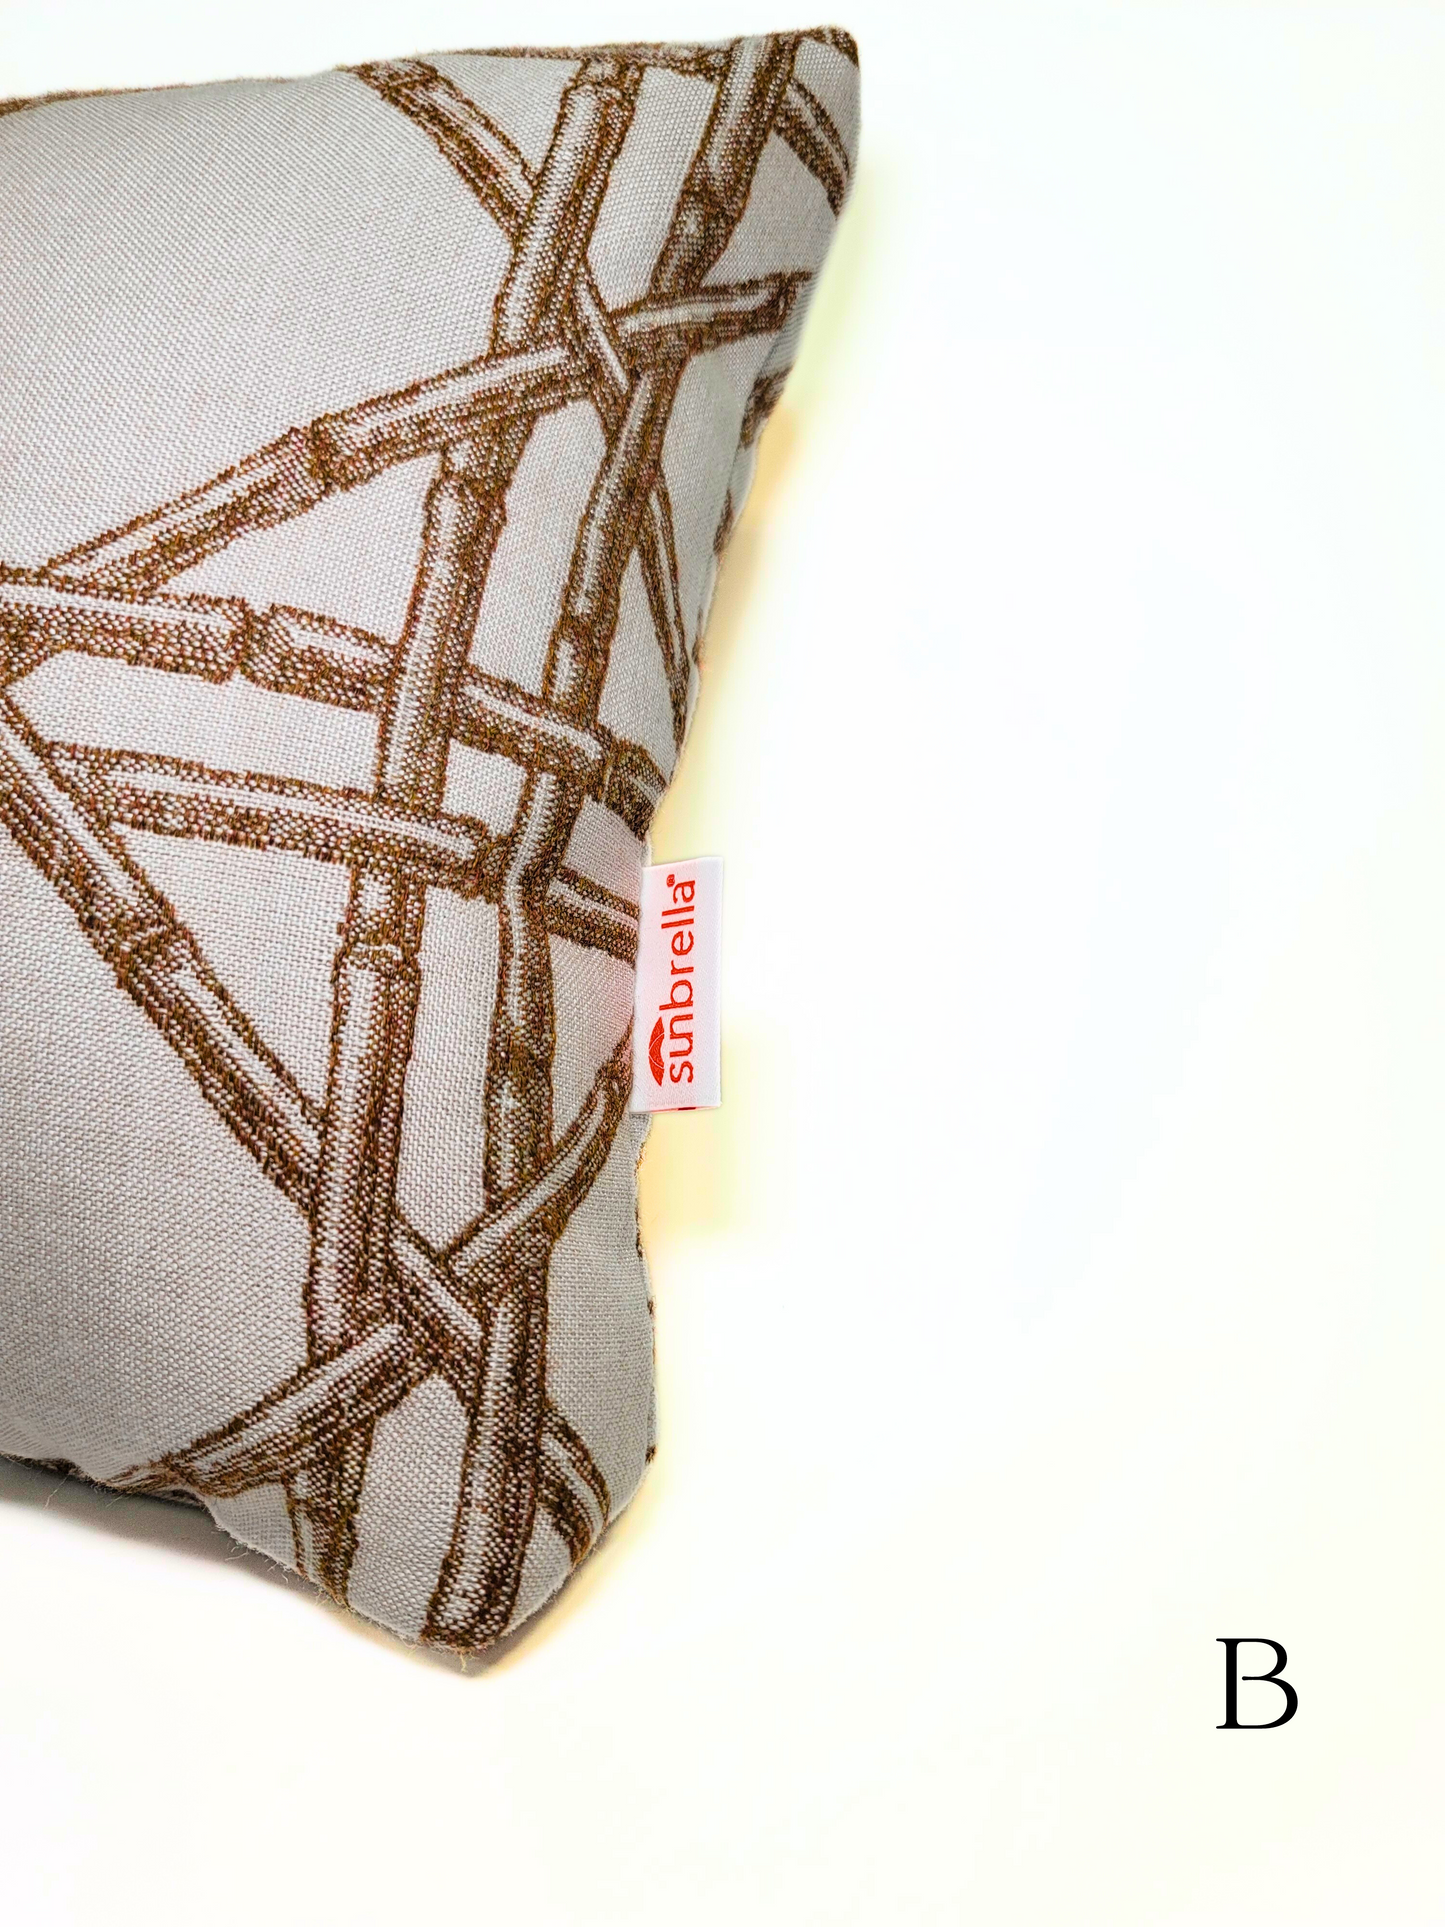 Premium Sunbrella 'Reign Rattan' Indoor/Outdoor Toss Pillow Cover